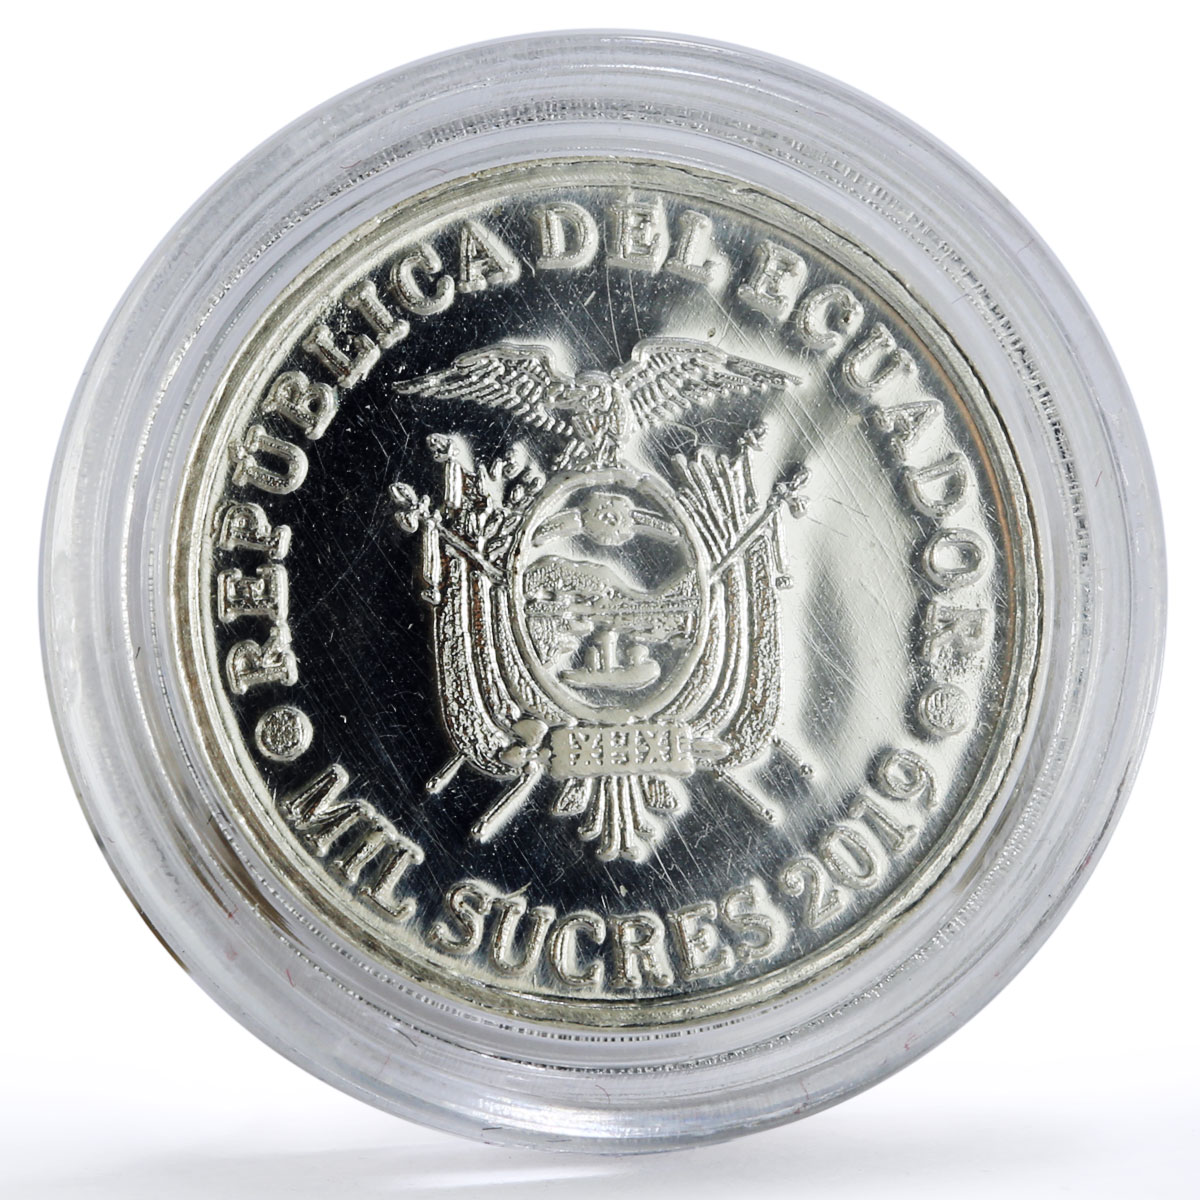 Ecuador 1000 sucres 44th President Jaime Roldos Aguilera Politics Ag coin 2019